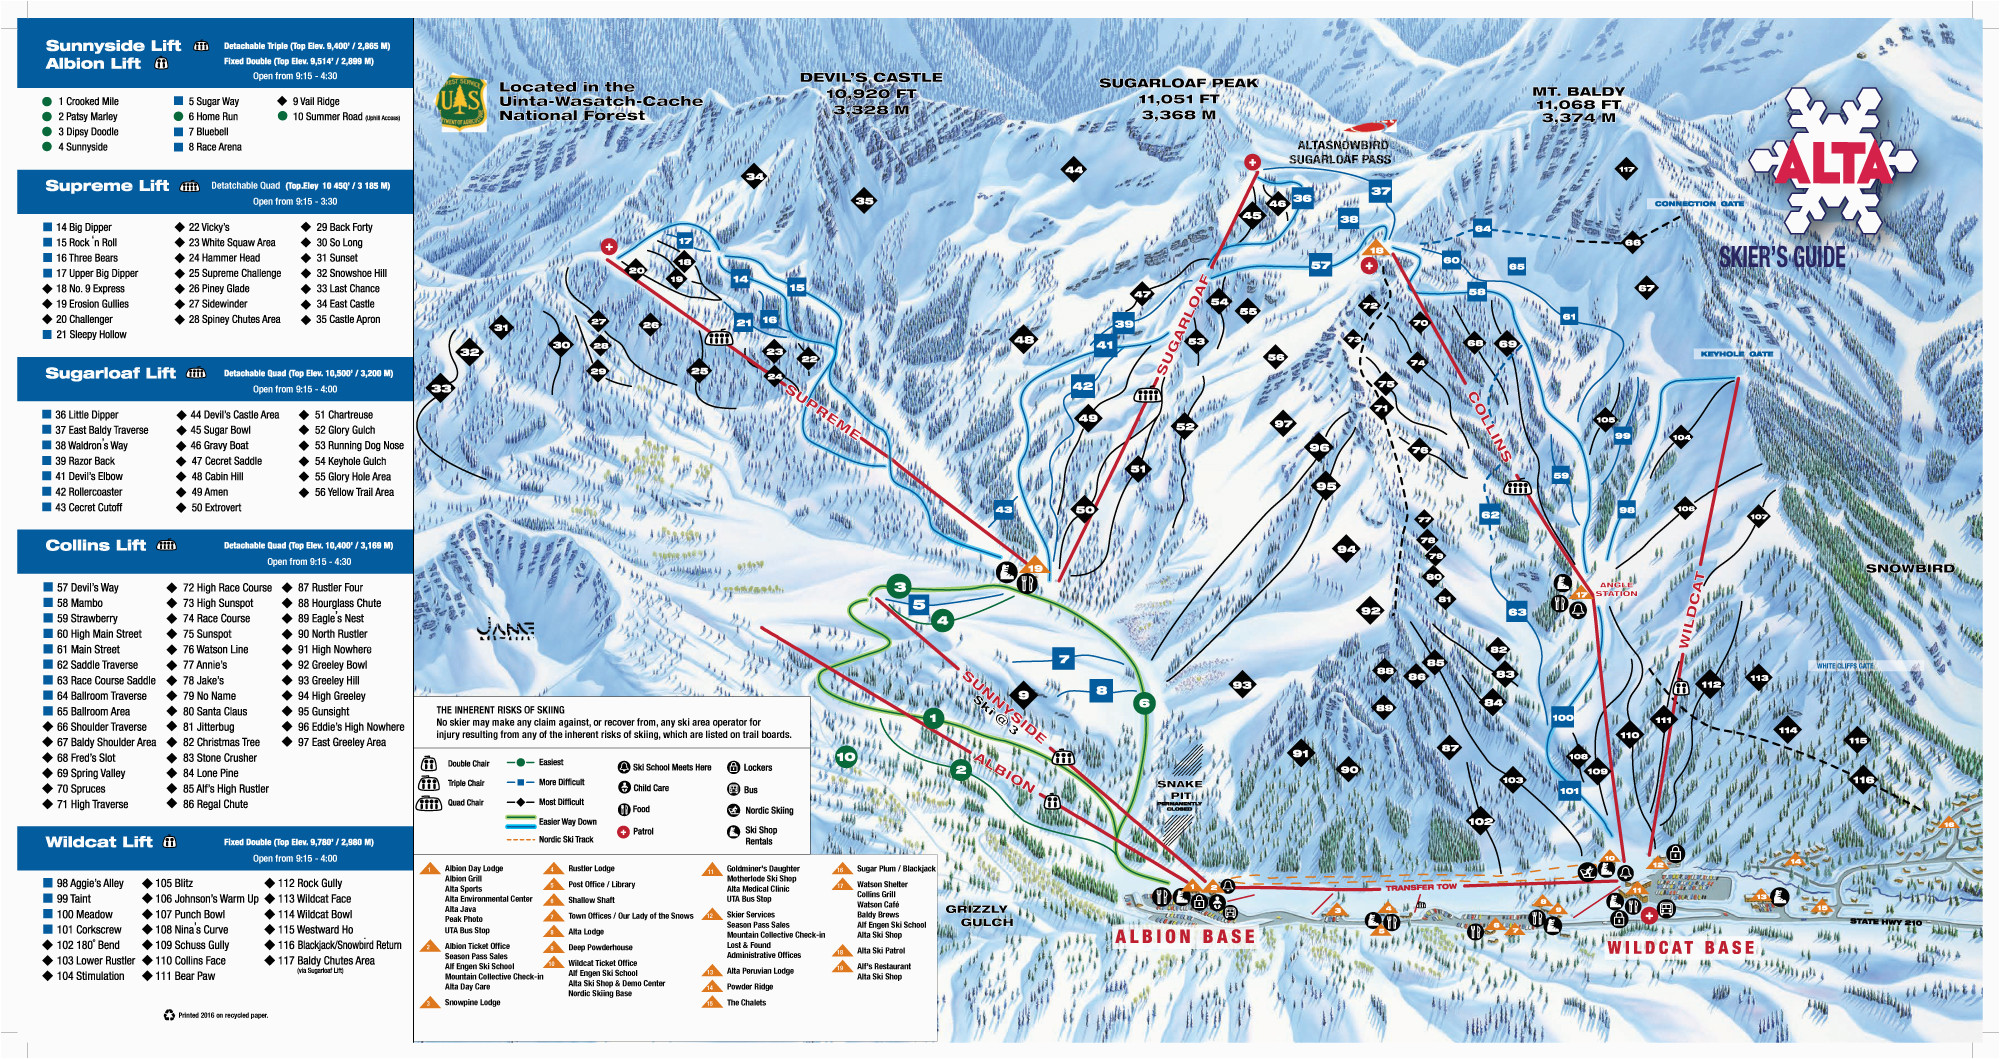 Map Of Colorado Ski Areas Colorado Ski Areas Map Maps Directions Of Map Of Colorado Ski Areas 